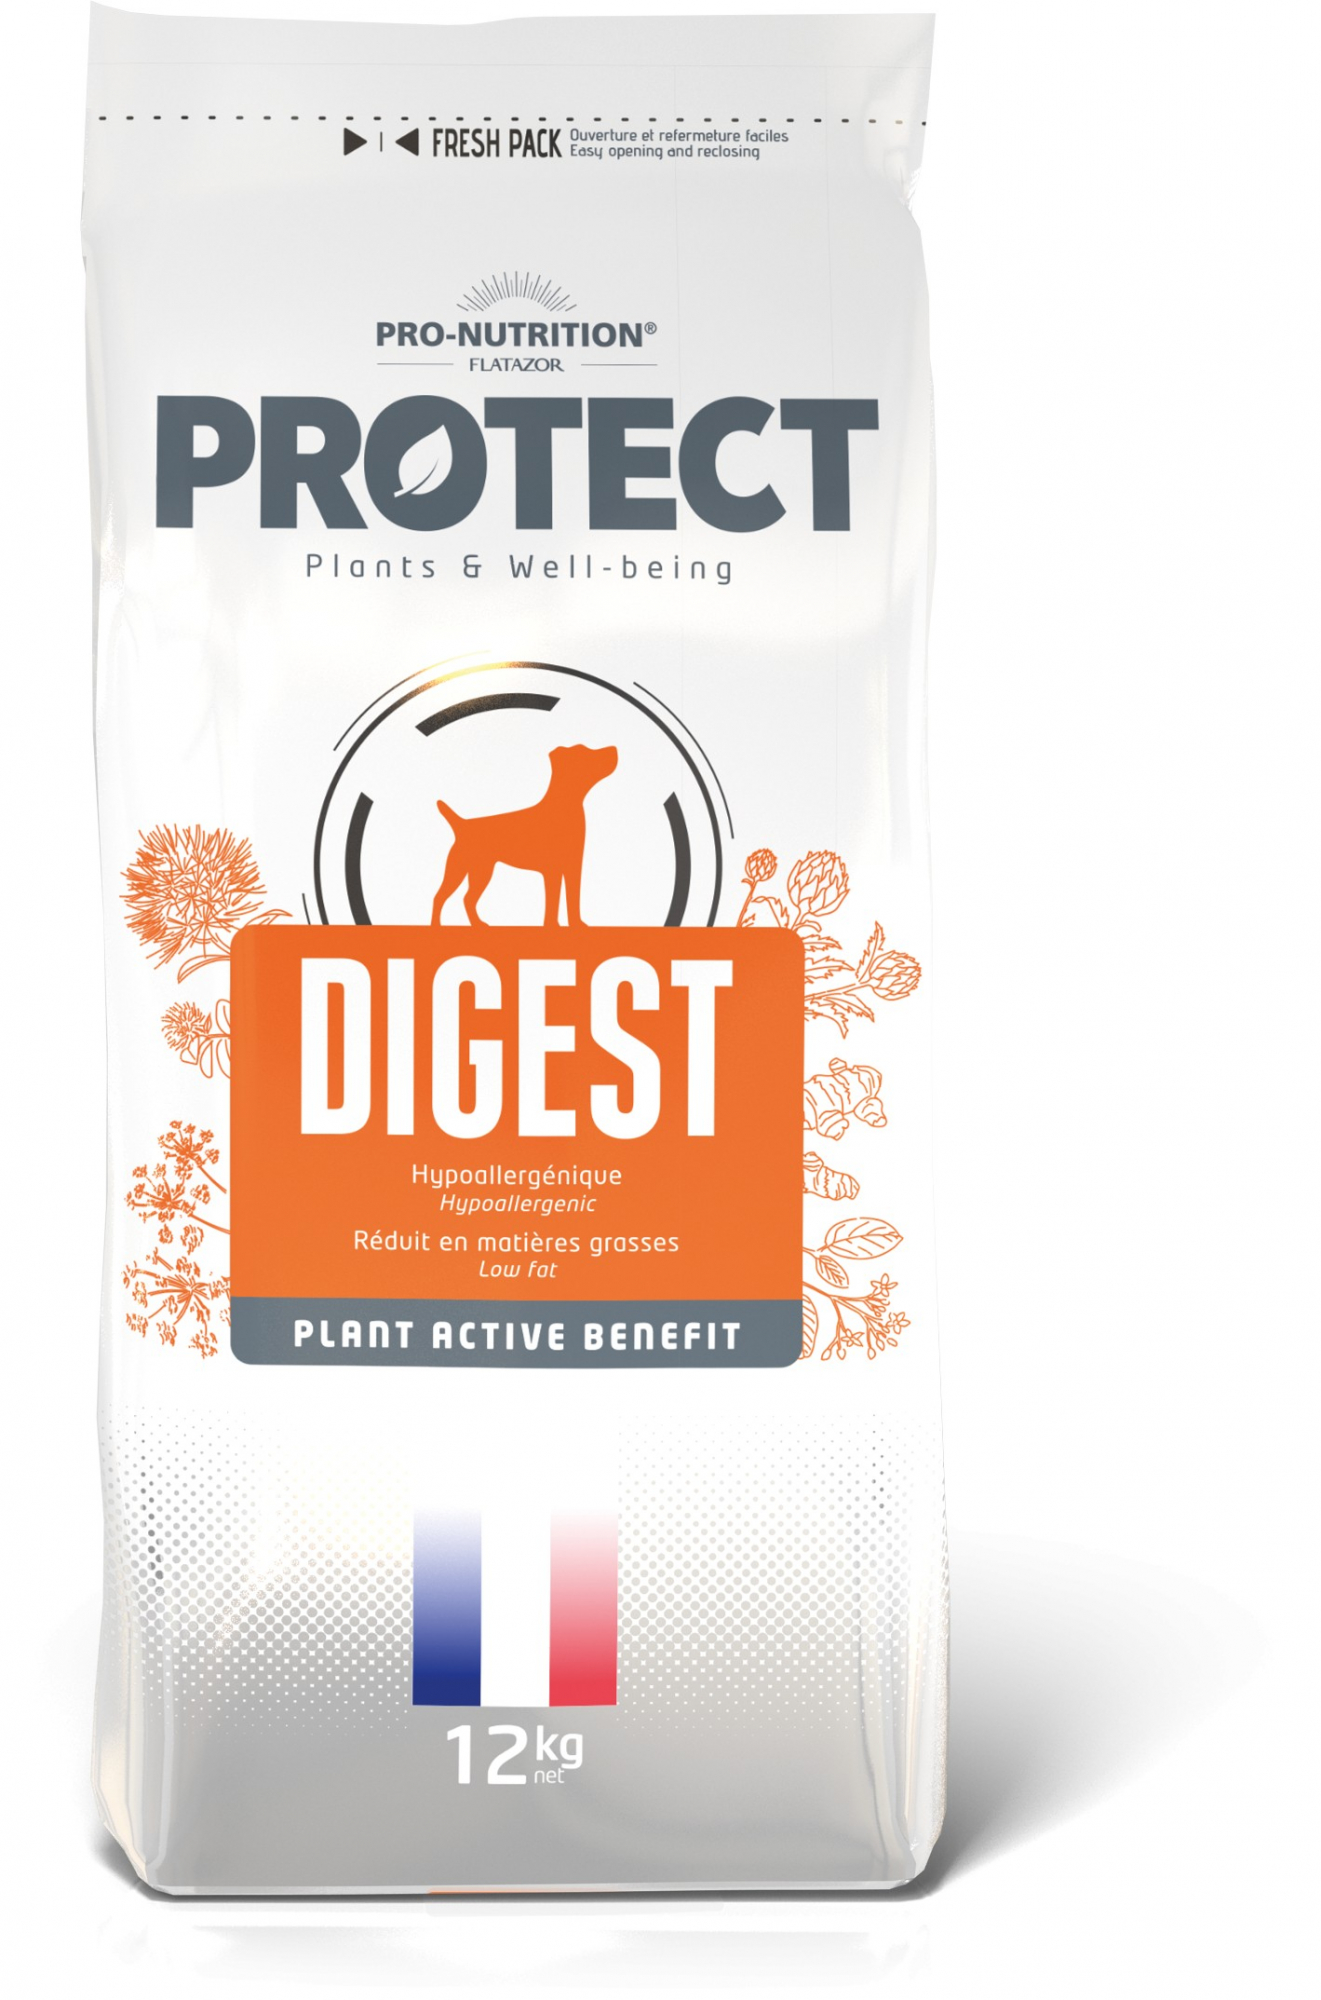 PRO-NUTRITION Flatazor PROTECT Digest voor gevoelige, volwassen honden